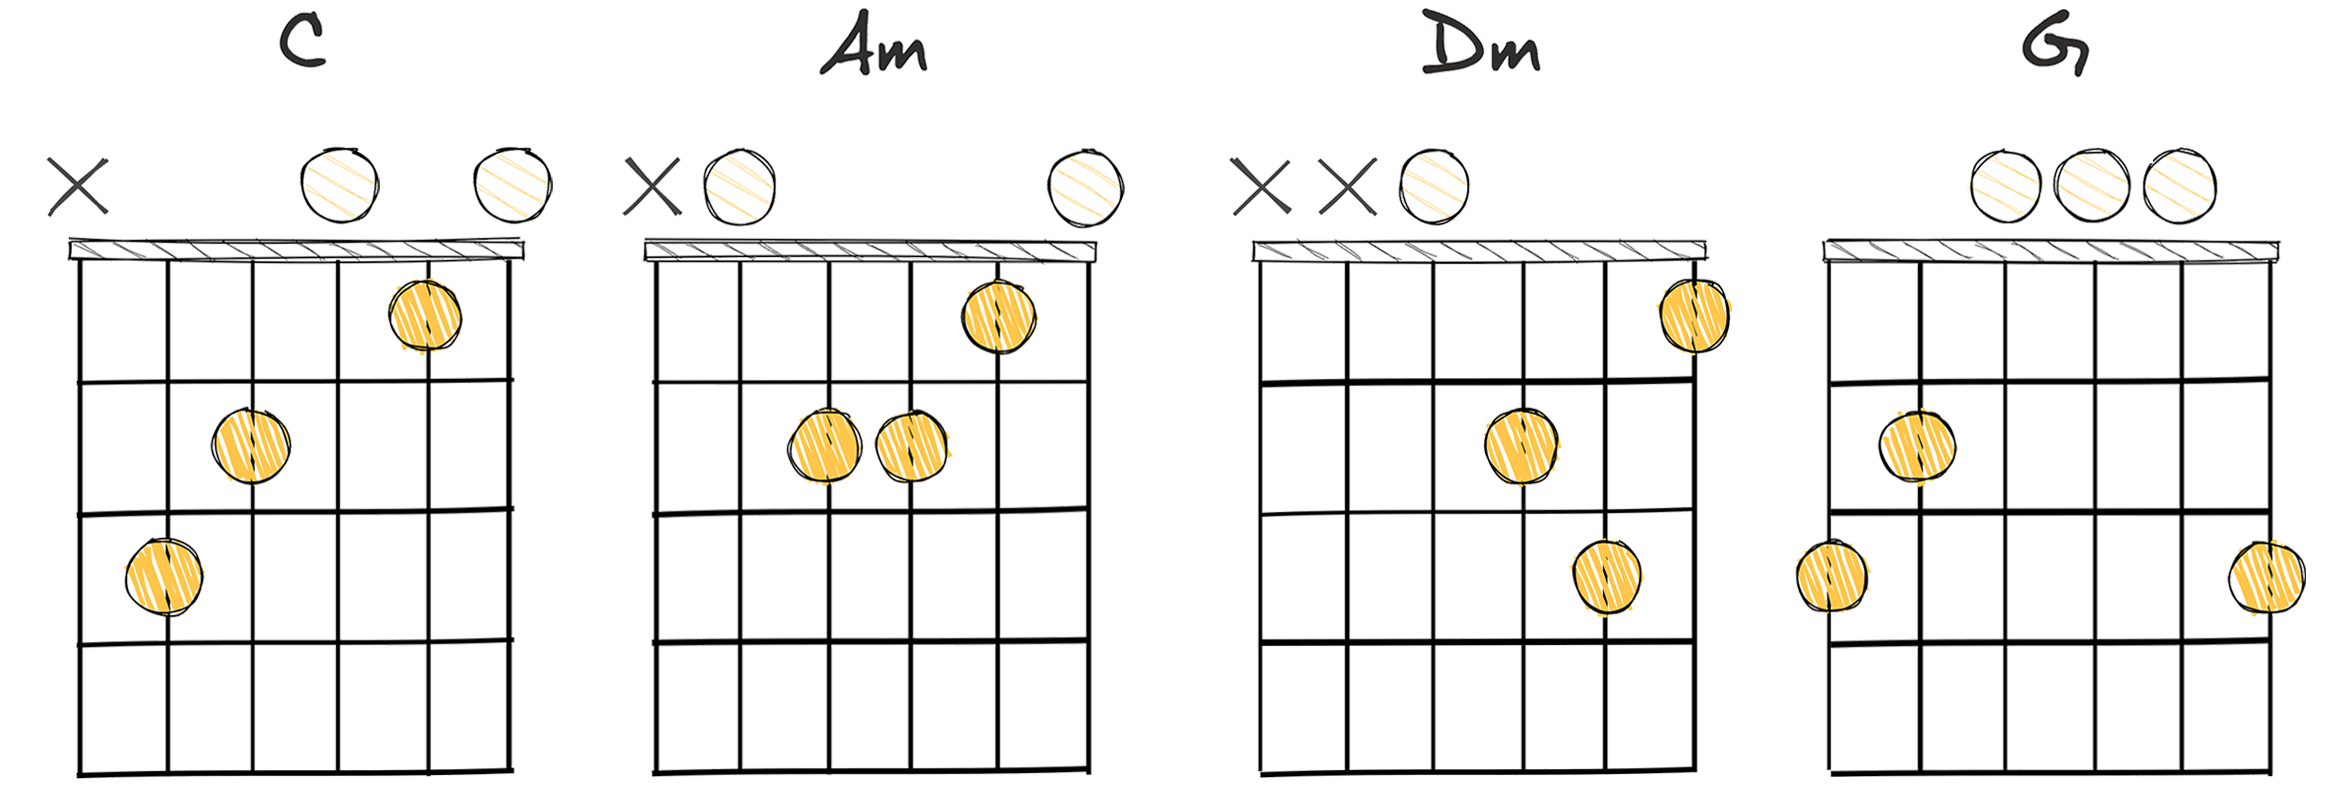 I - vi - ii - V (1-6-2-5) chords diagram